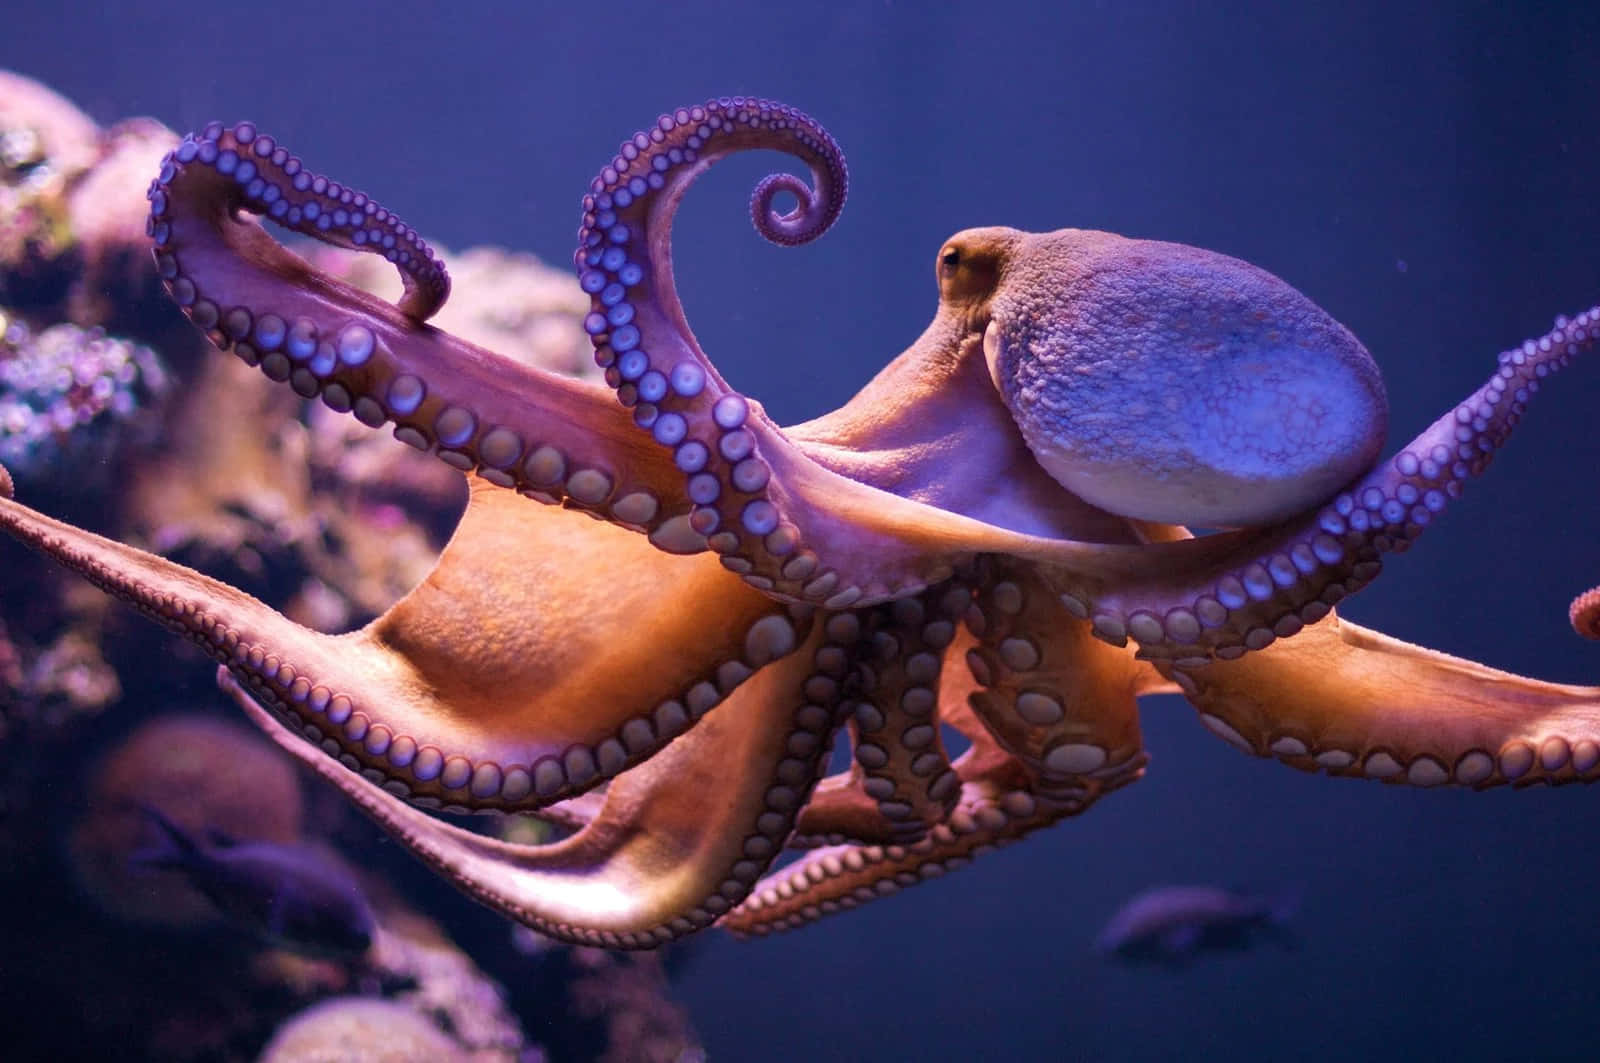 Enlysfarvet Blæksprutte, Der Camouflerer Sig Omkring Koralrevet.